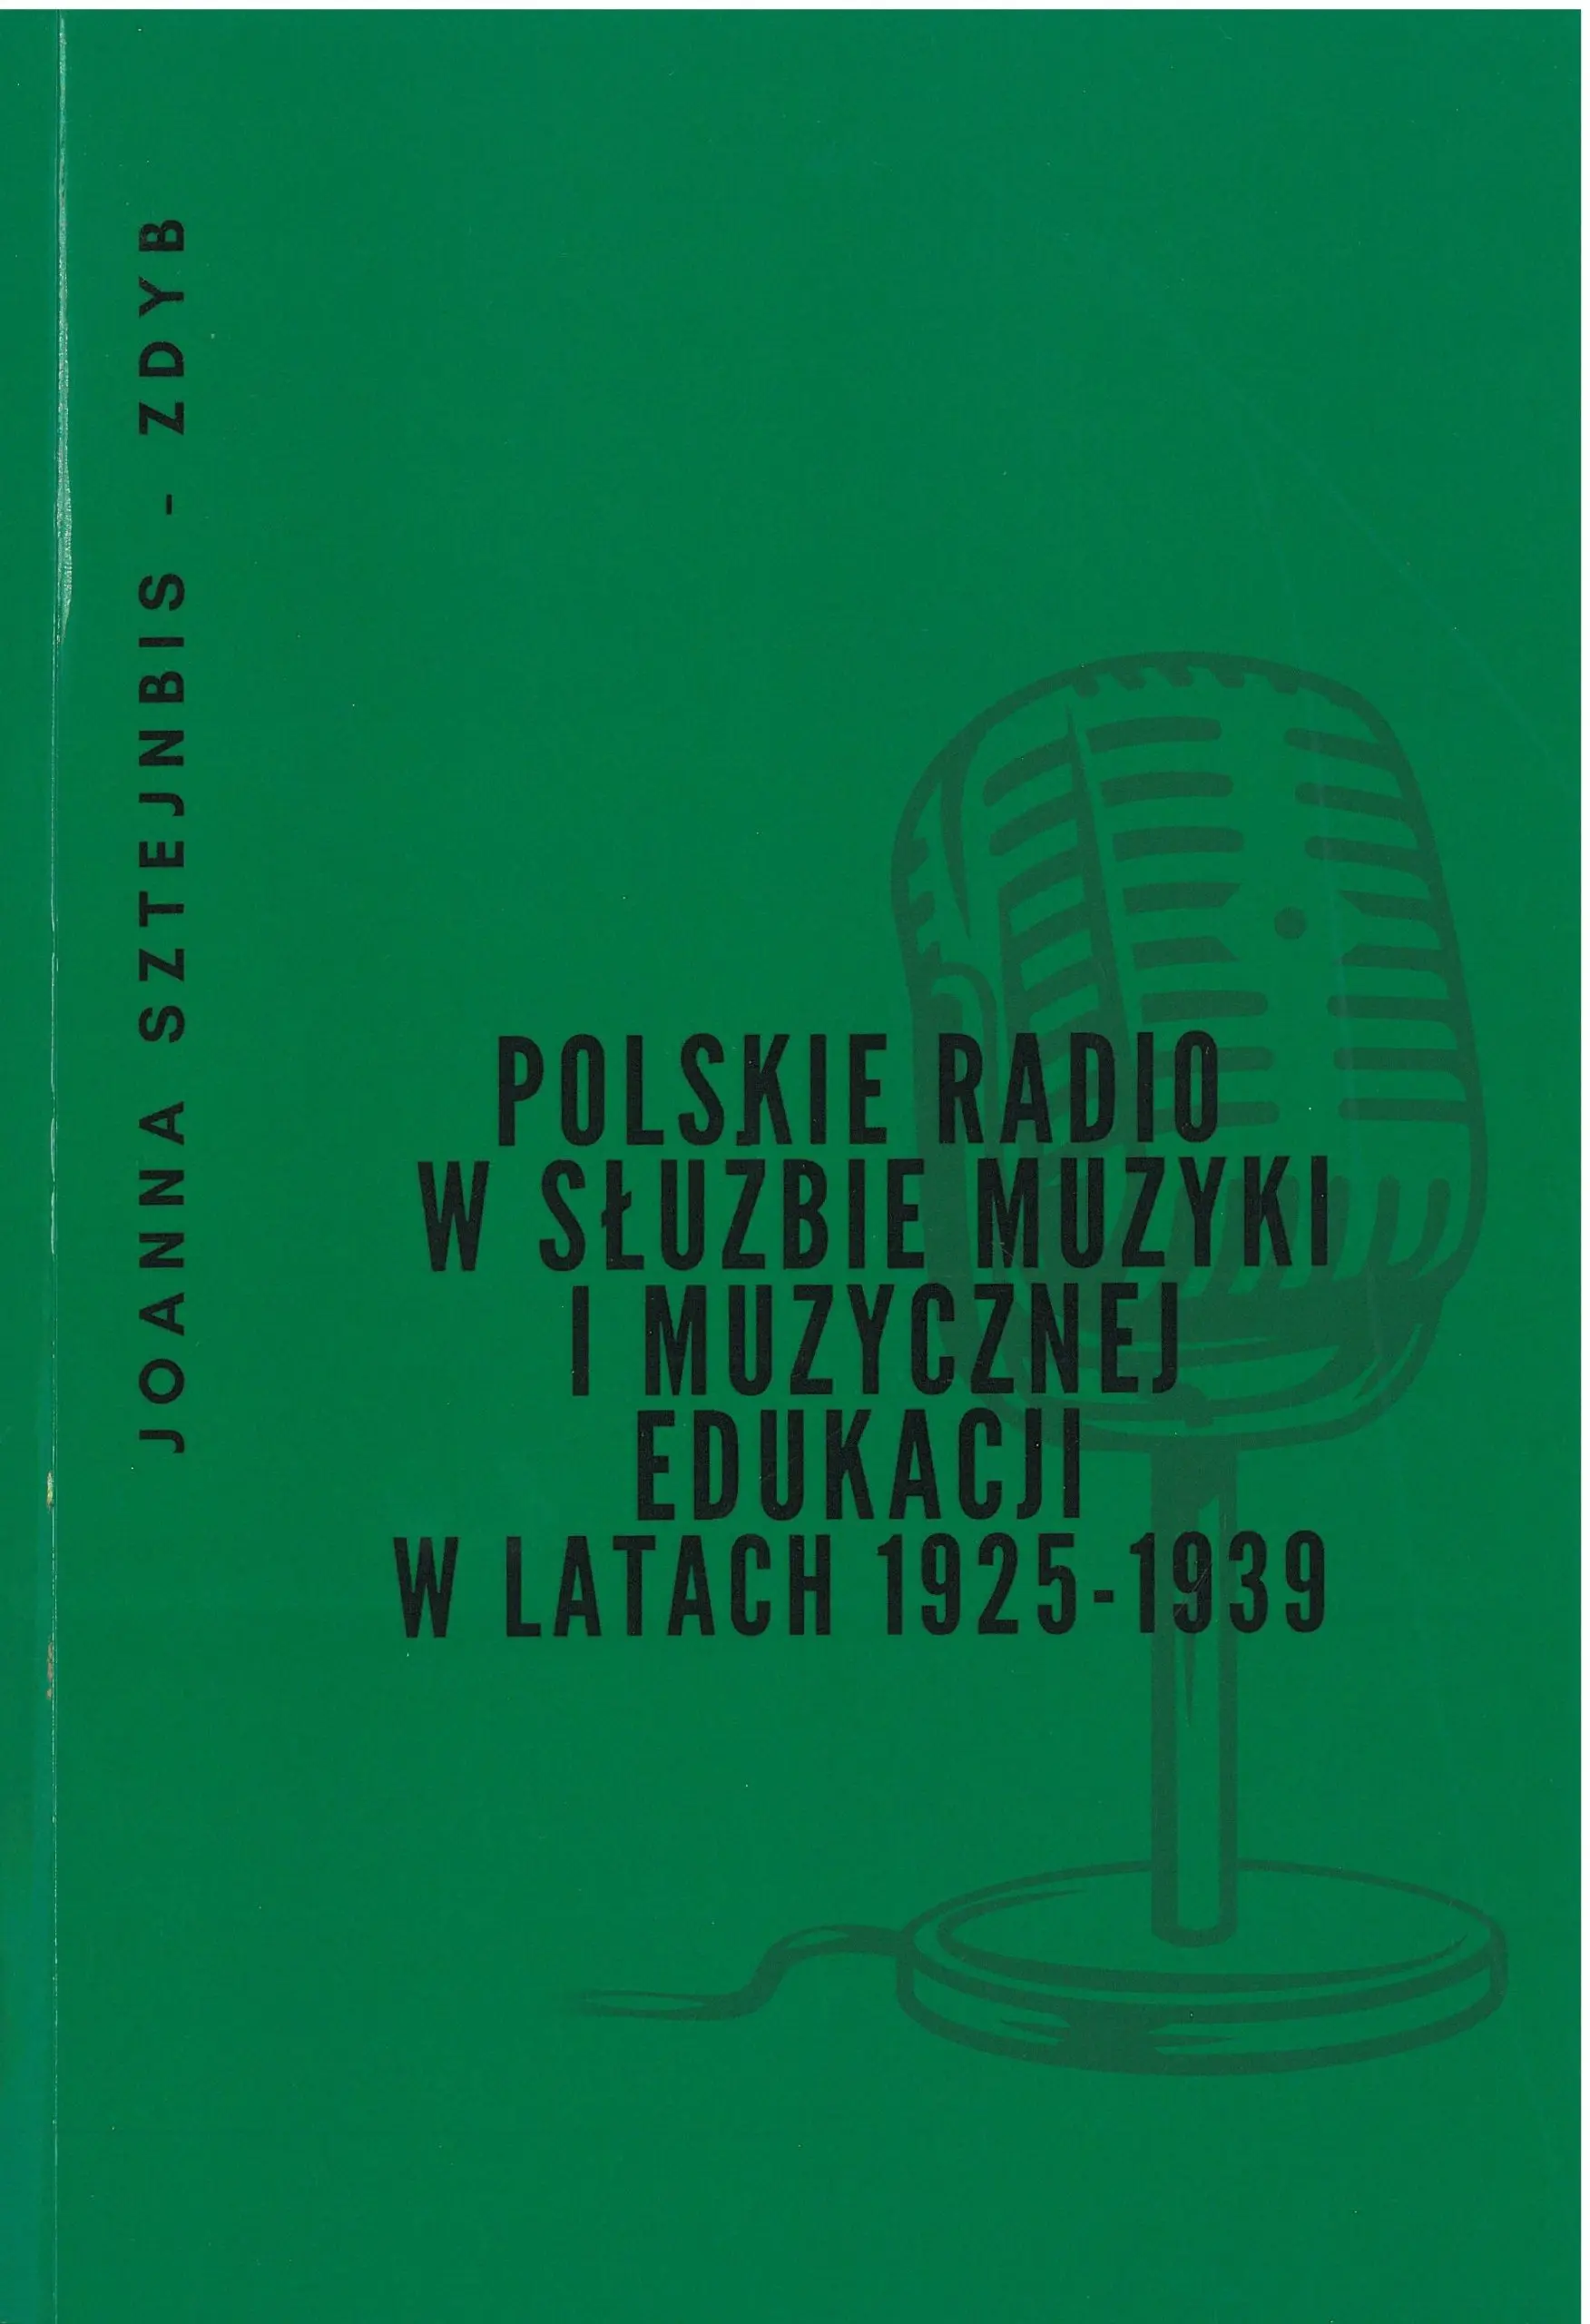 4 grudnia kalendarium historia polskie radio - Co wydarzyło się 4 grudnia